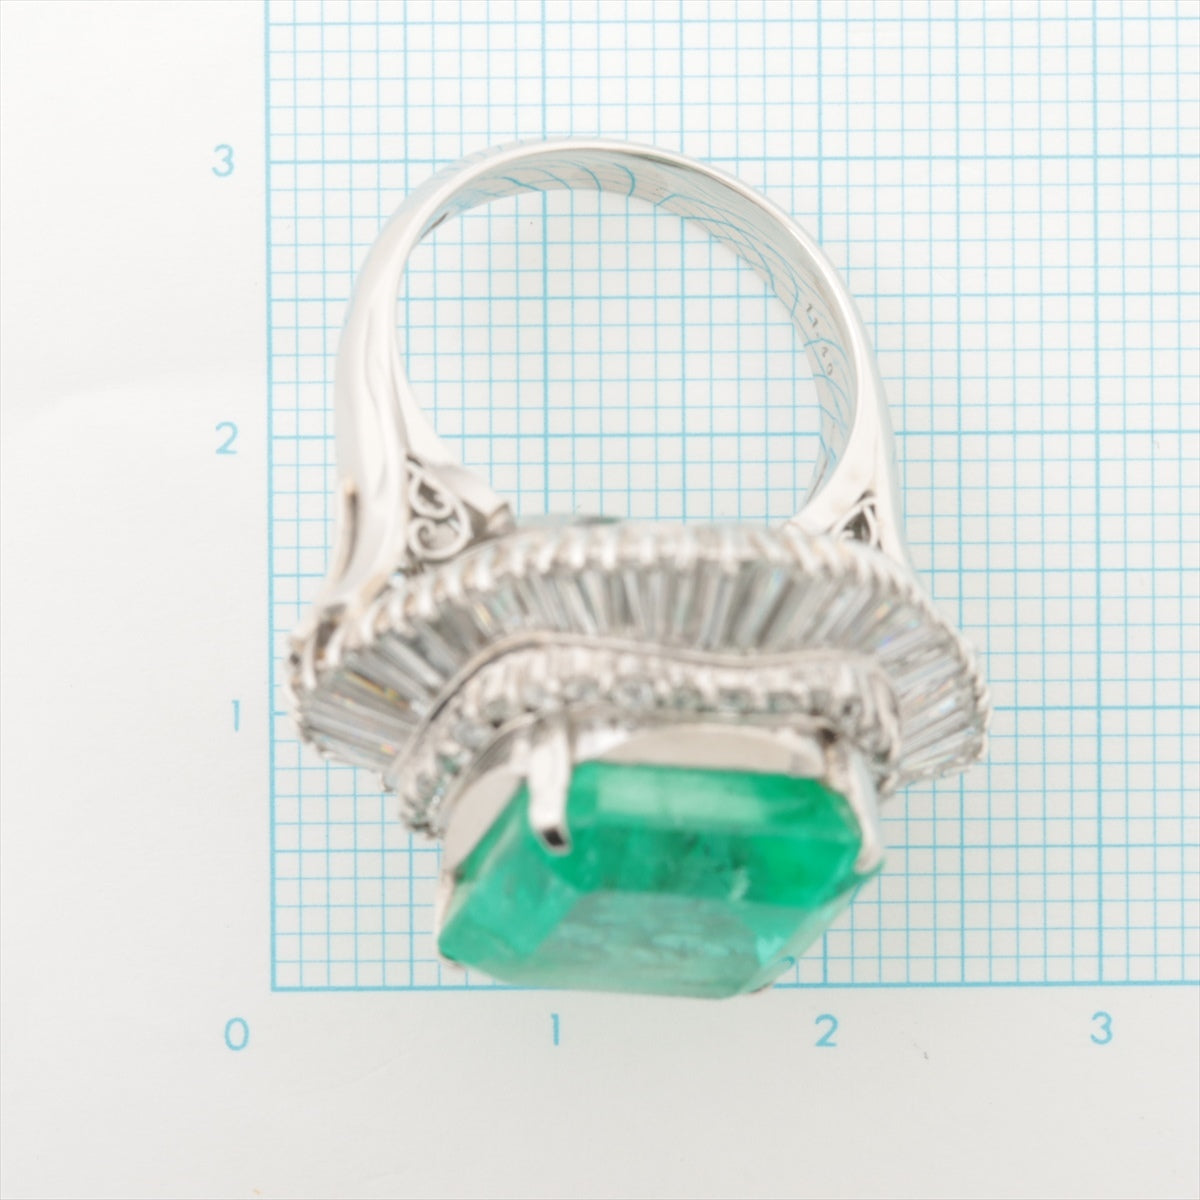 Emerald diamond ring Pt900 19.2g 11.40 D295